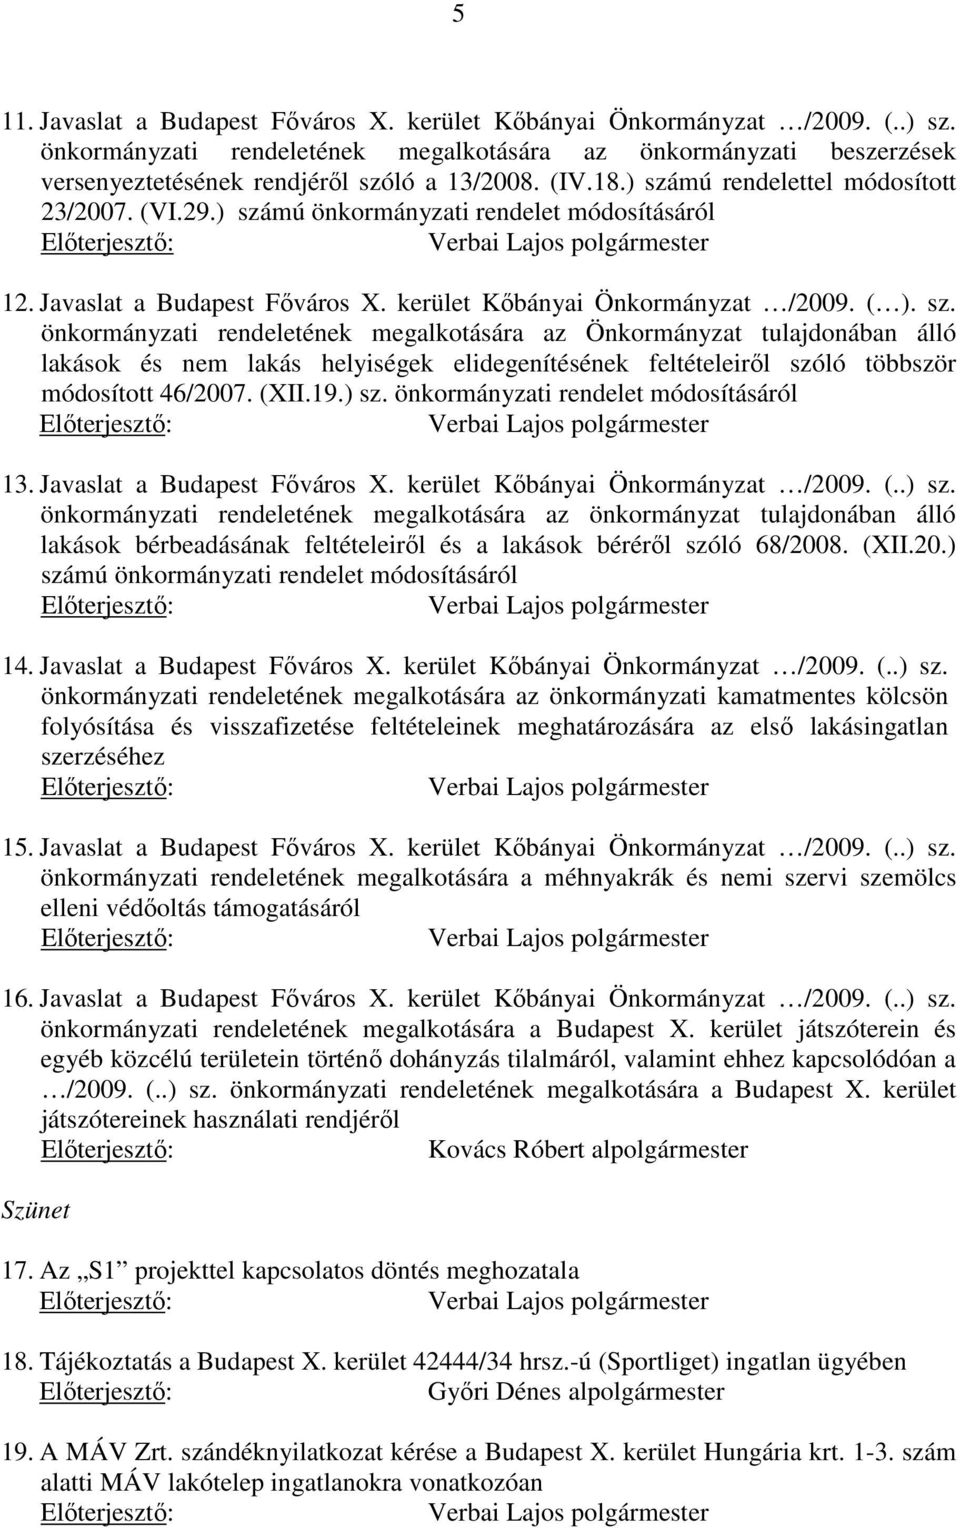 (XII.19.) sz. önkormányzati rendelet módosításáról 13. Javaslat a Budapest Főváros X. kerület Kőbányai Önkormányzat /2009. (..) sz. önkormányzati rendeletének megalkotására az önkormányzat tulajdonában álló lakások bérbeadásának feltételeiről és a lakások béréről szóló 68/2008.